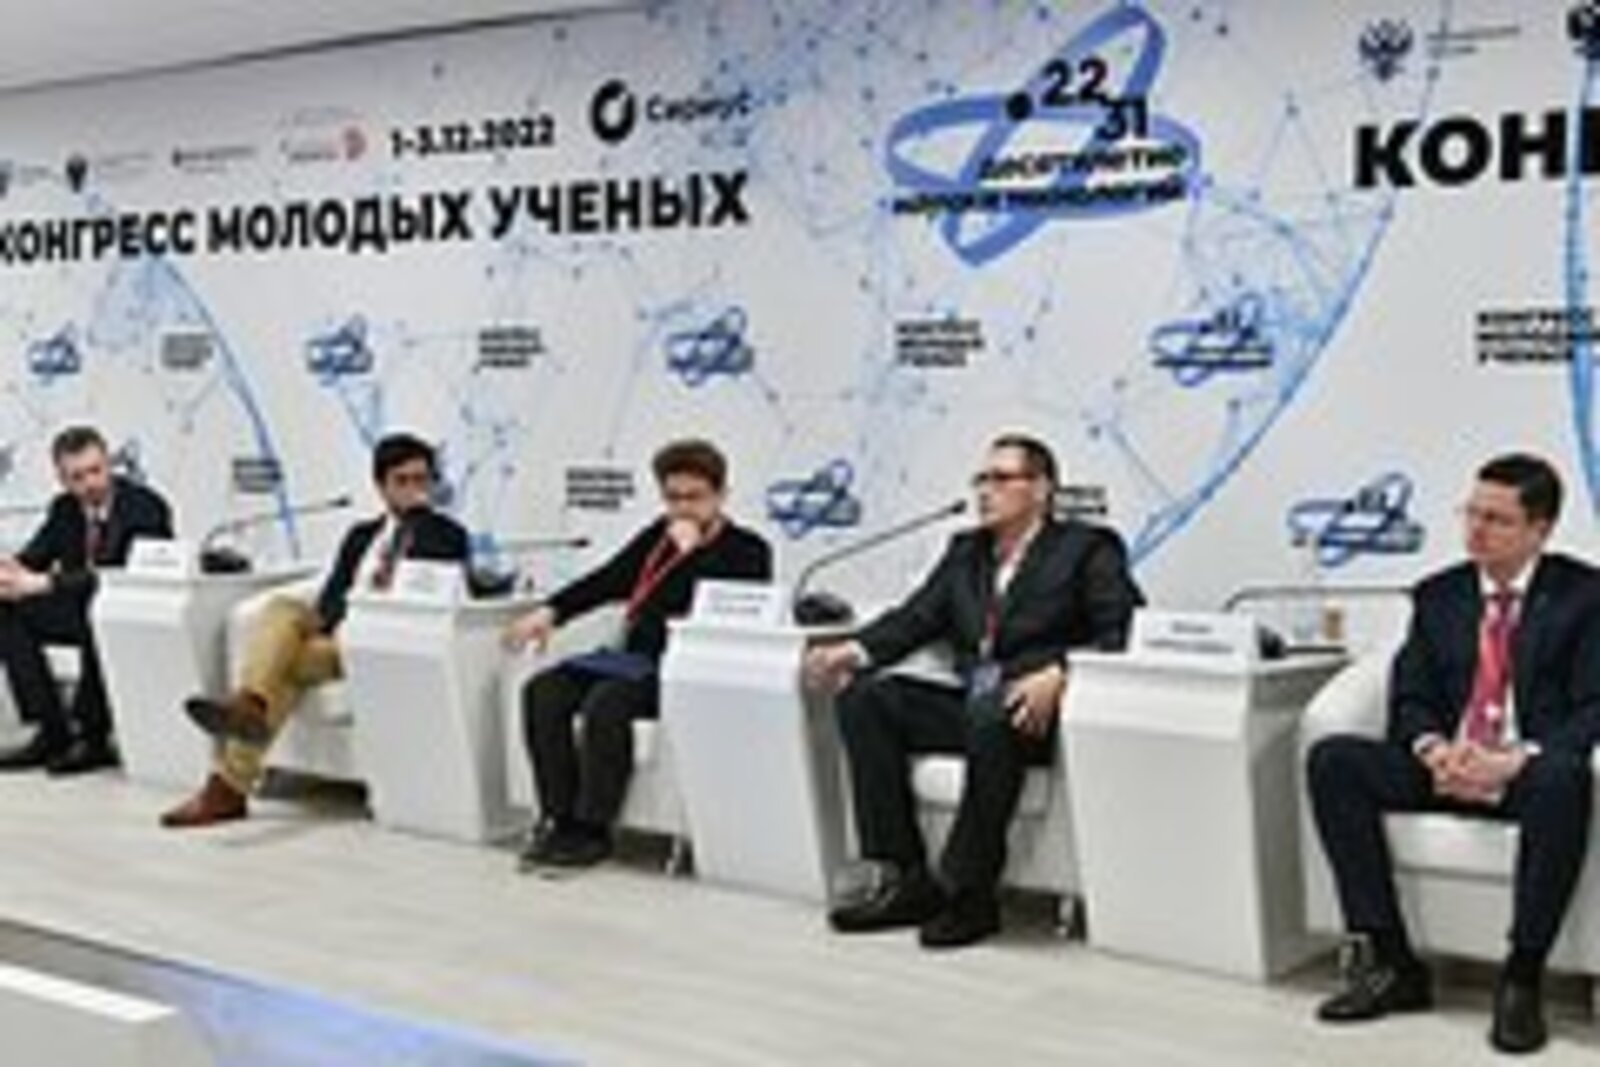 Владимир Путин встретился с участниками Конгресса молодых ученых